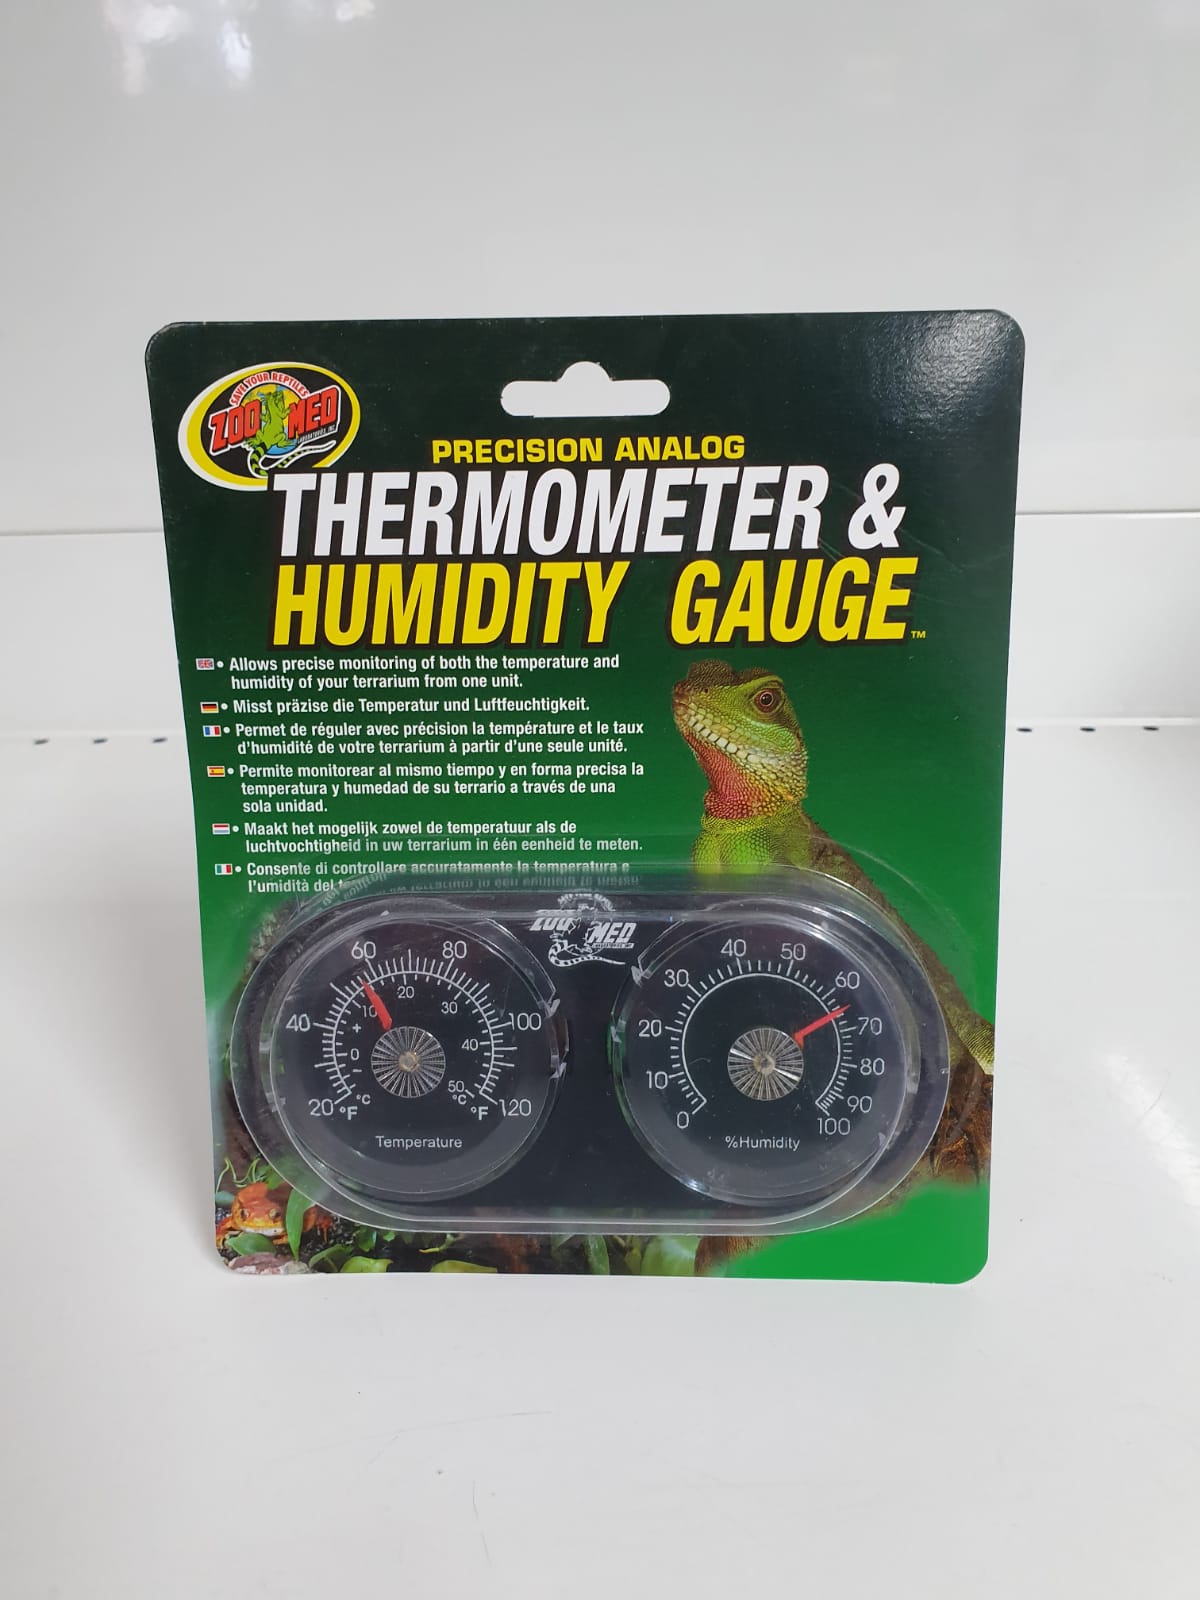 igrometro e termometro